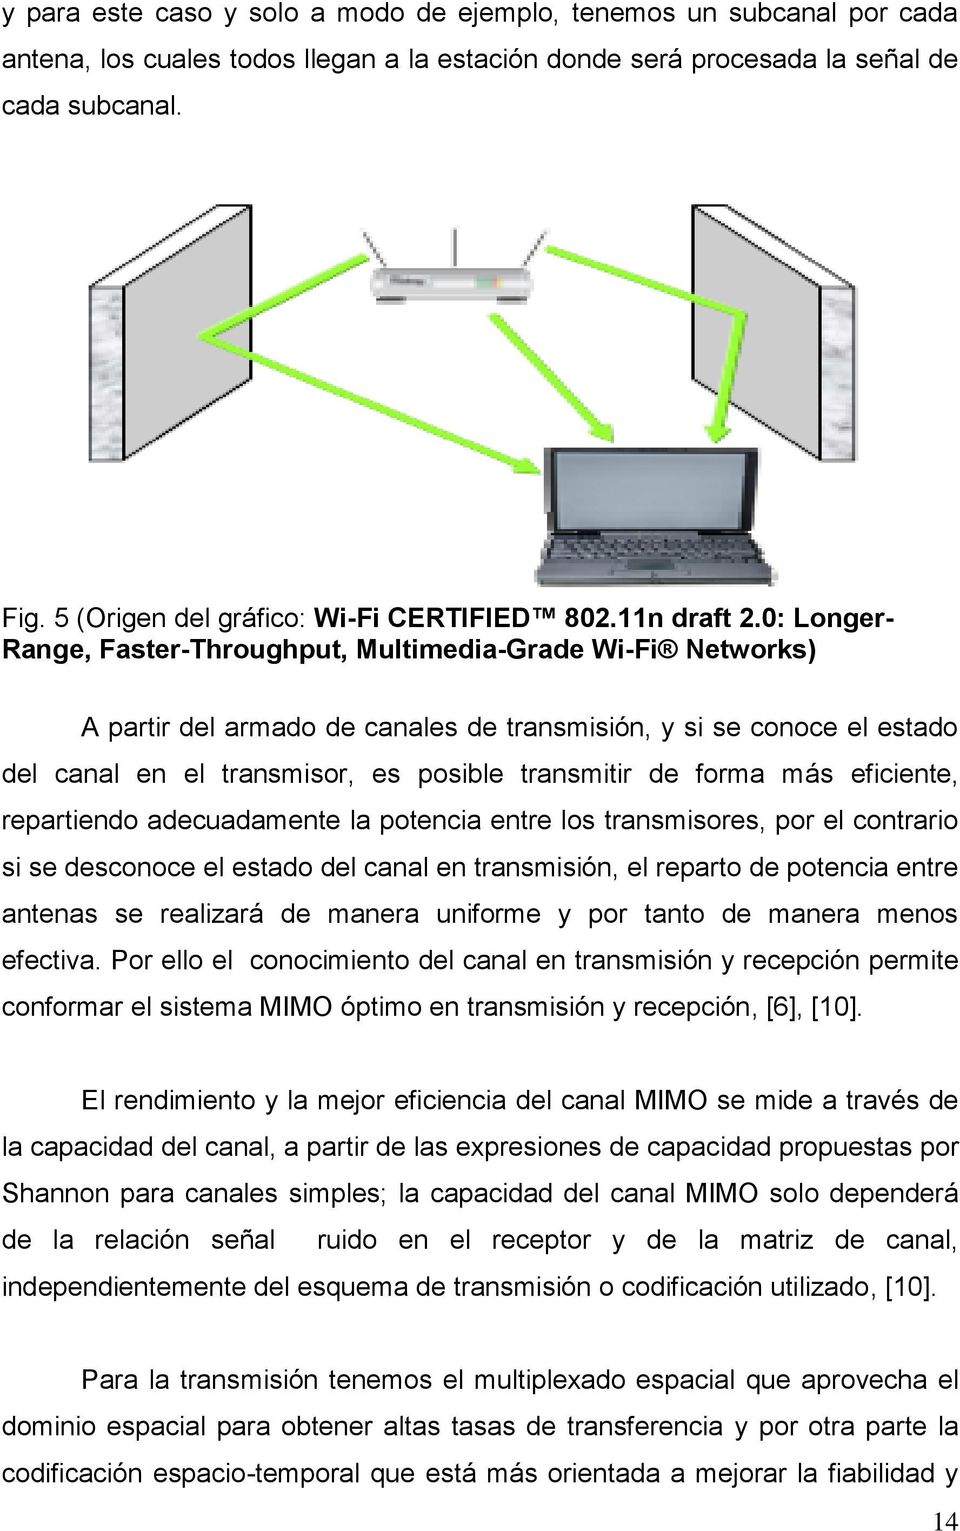 0: Longer- Range, Faster-Throughput, Multimedia-Grade Wi-Fi Networks) A partir del armado de canales de transmisión, y si se conoce el estado del canal en el transmisor, es posible transmitir de